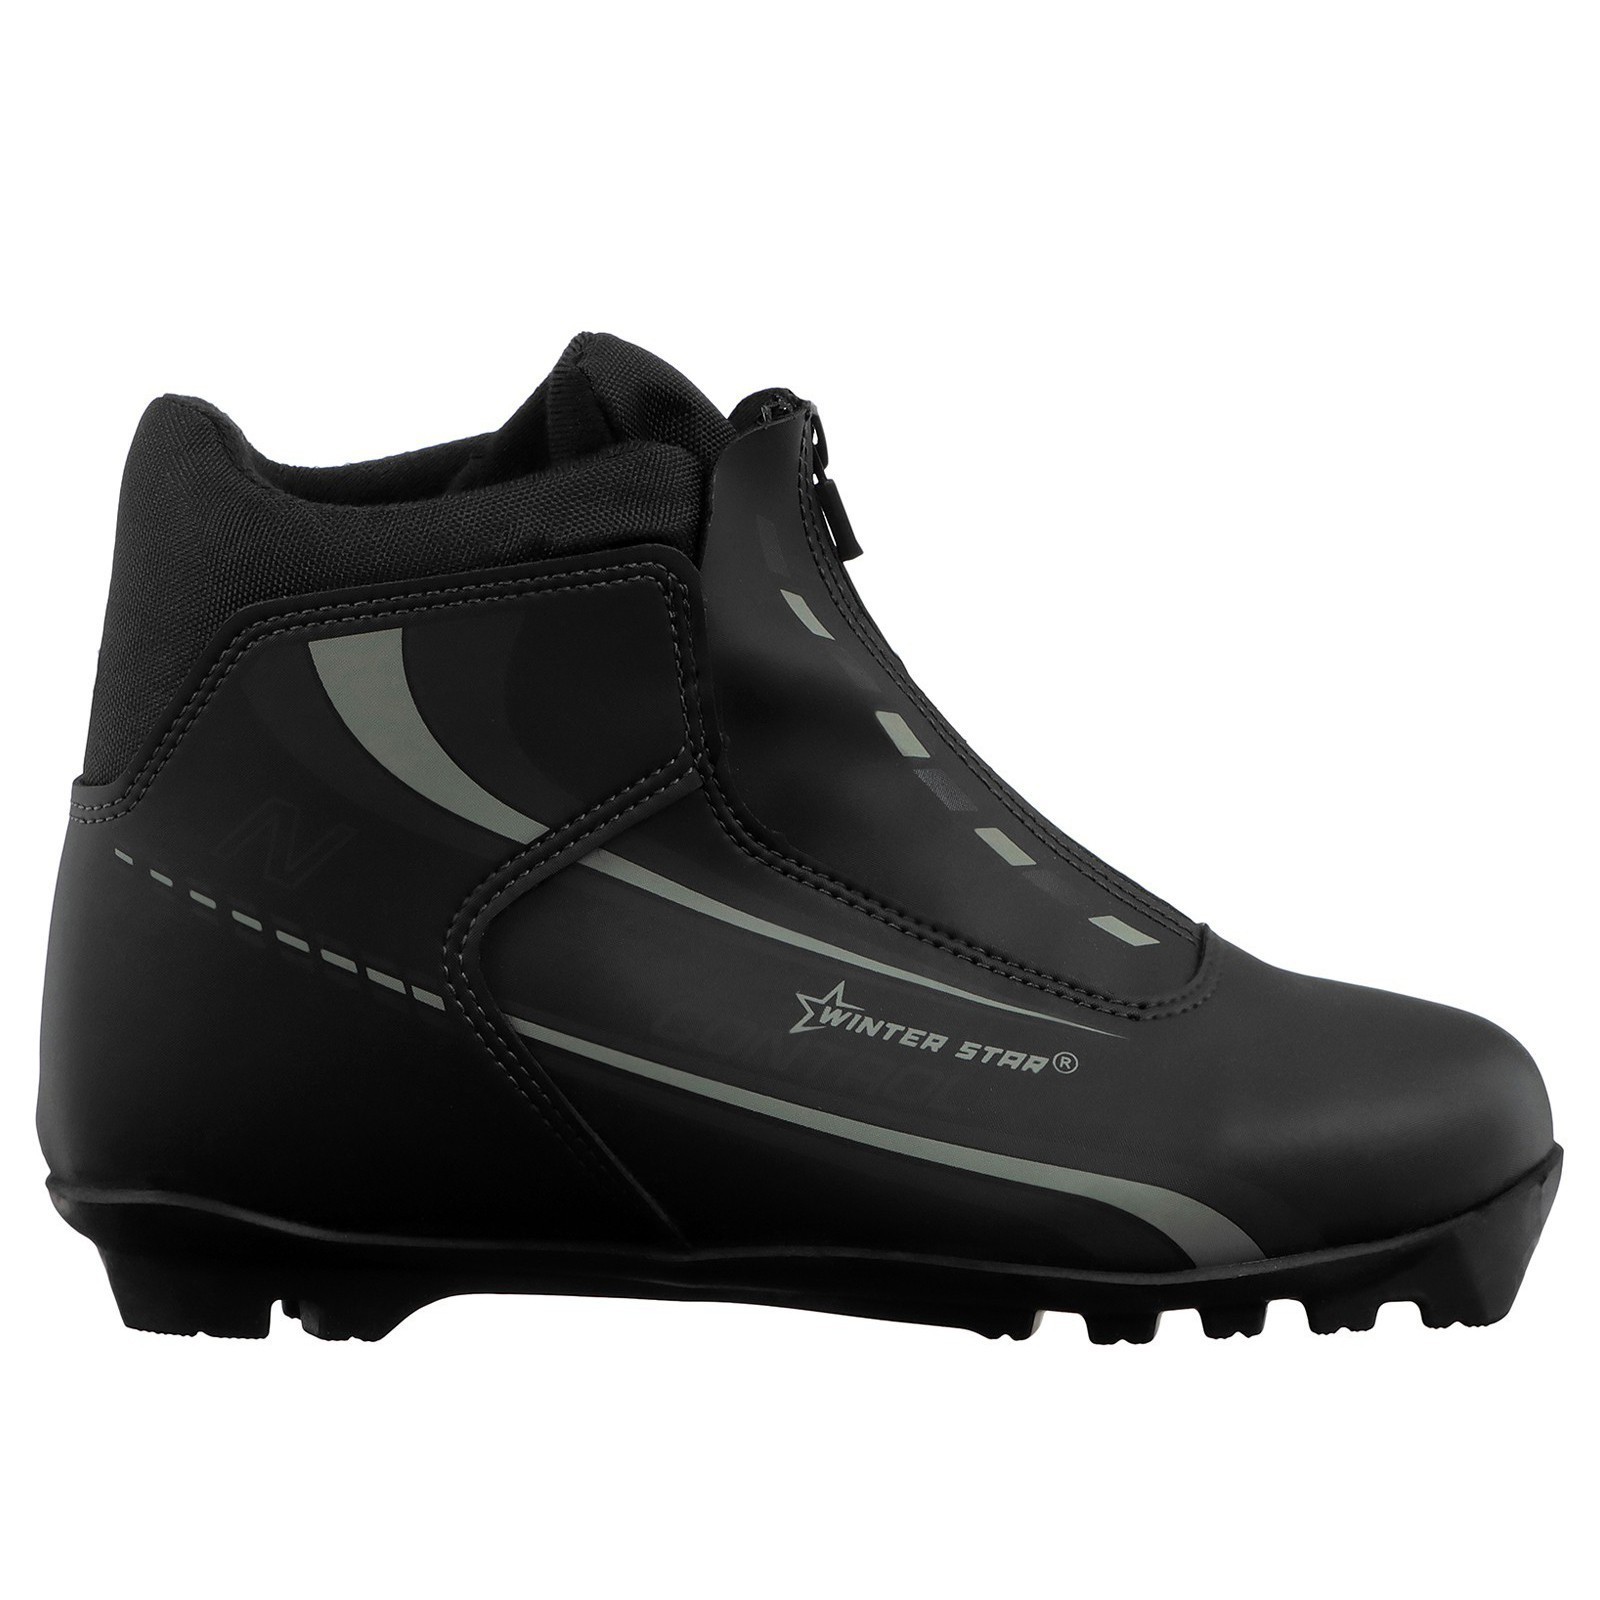 Ботинки лыжные Winter Star control, NNN, цвет чёрный/лого серый